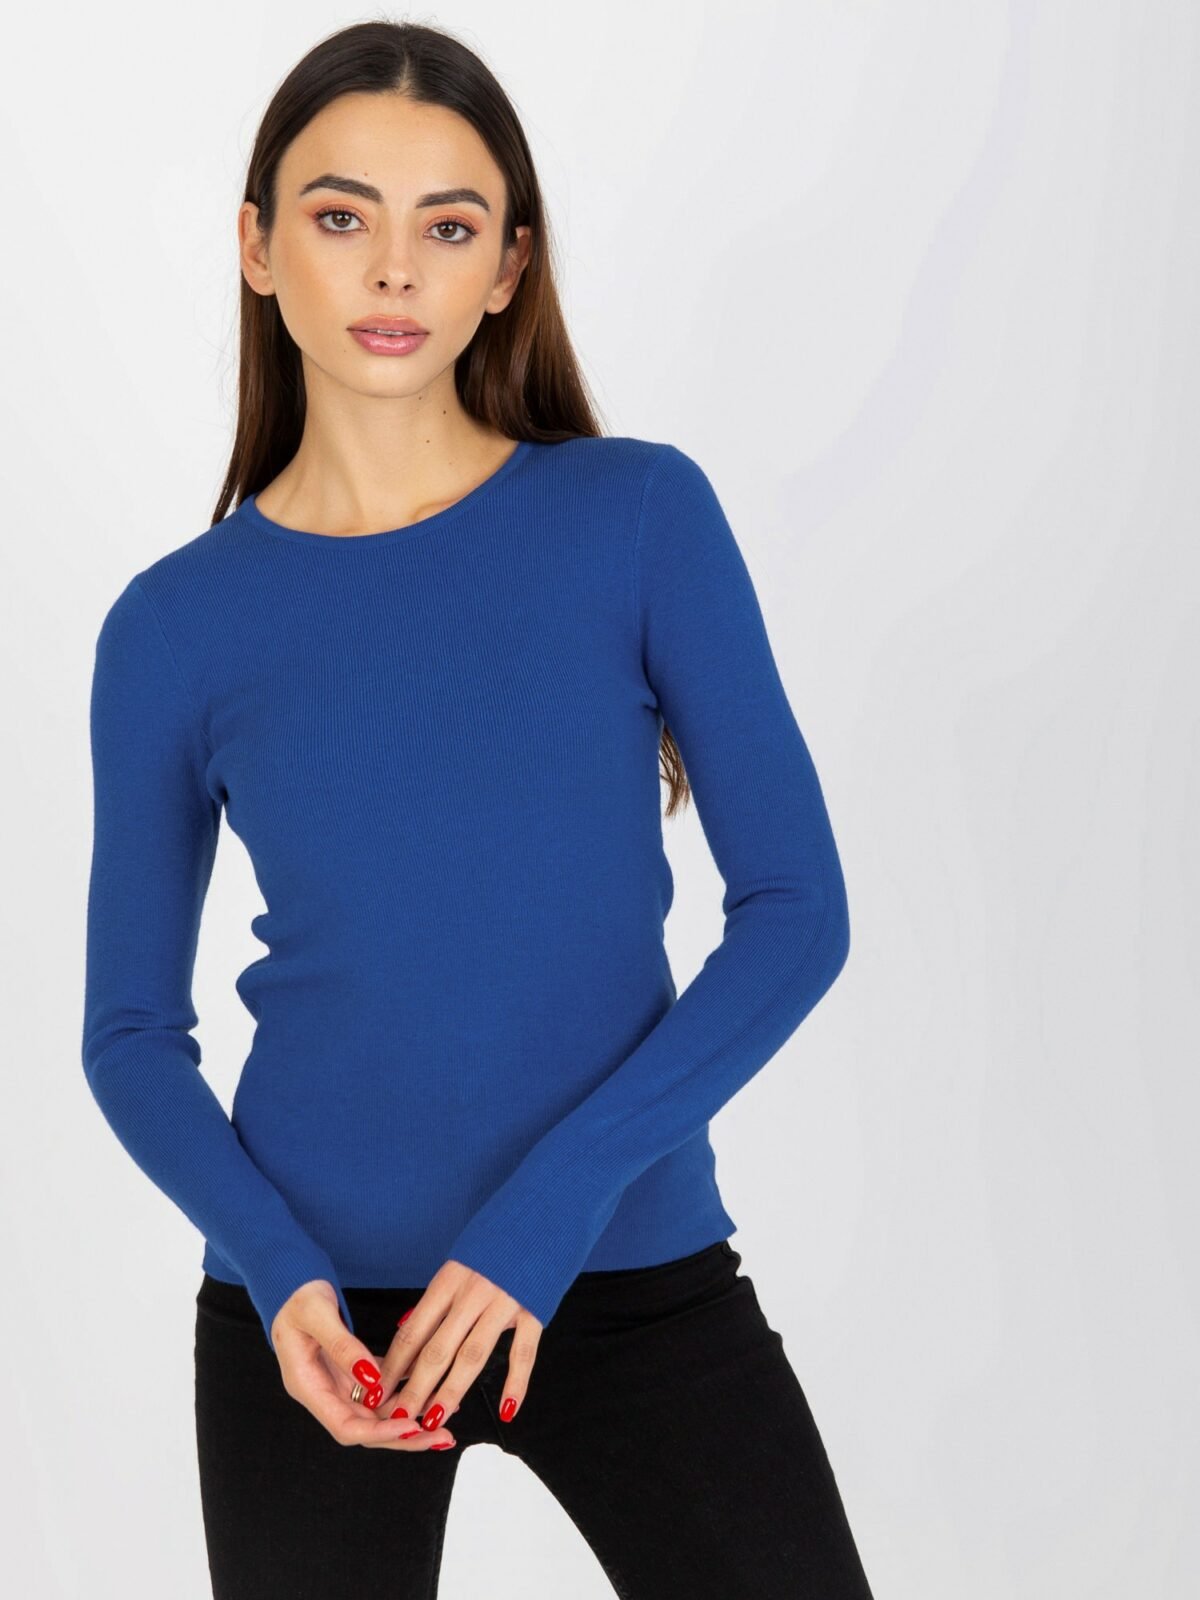 Kobaltově modrý jednoduchý svetr s